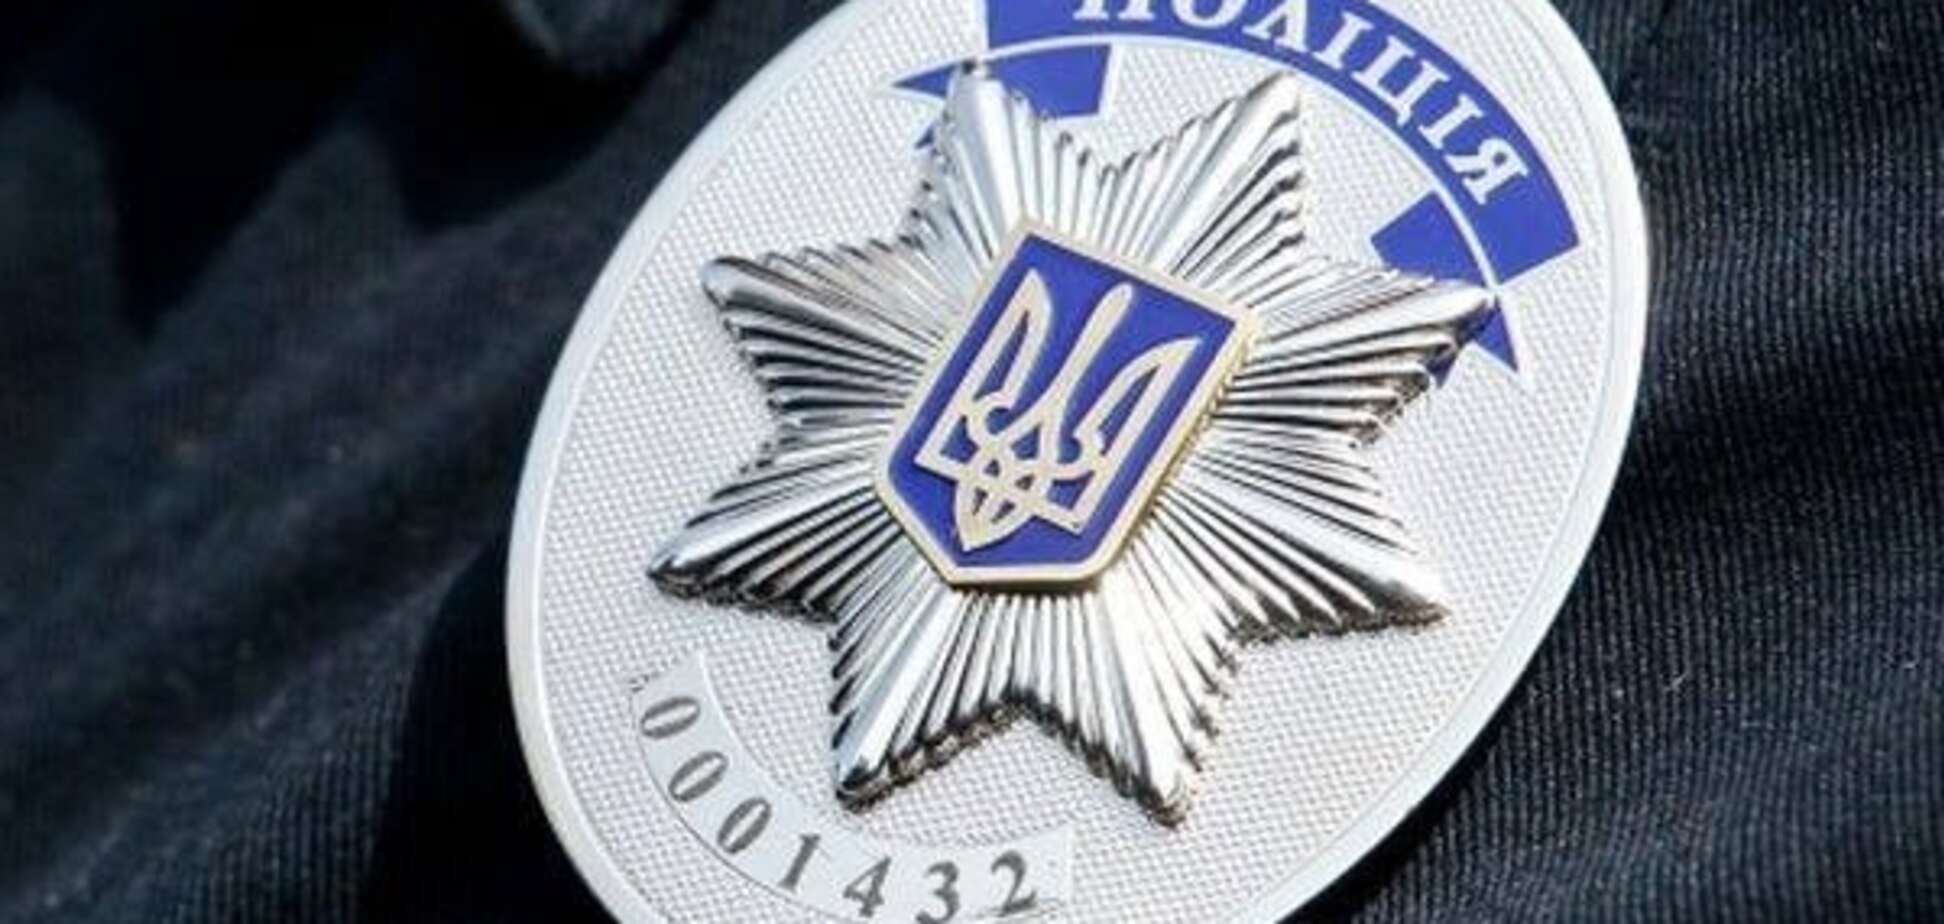 Прощай, милиция: украинская полиция получила свои праздник и символику